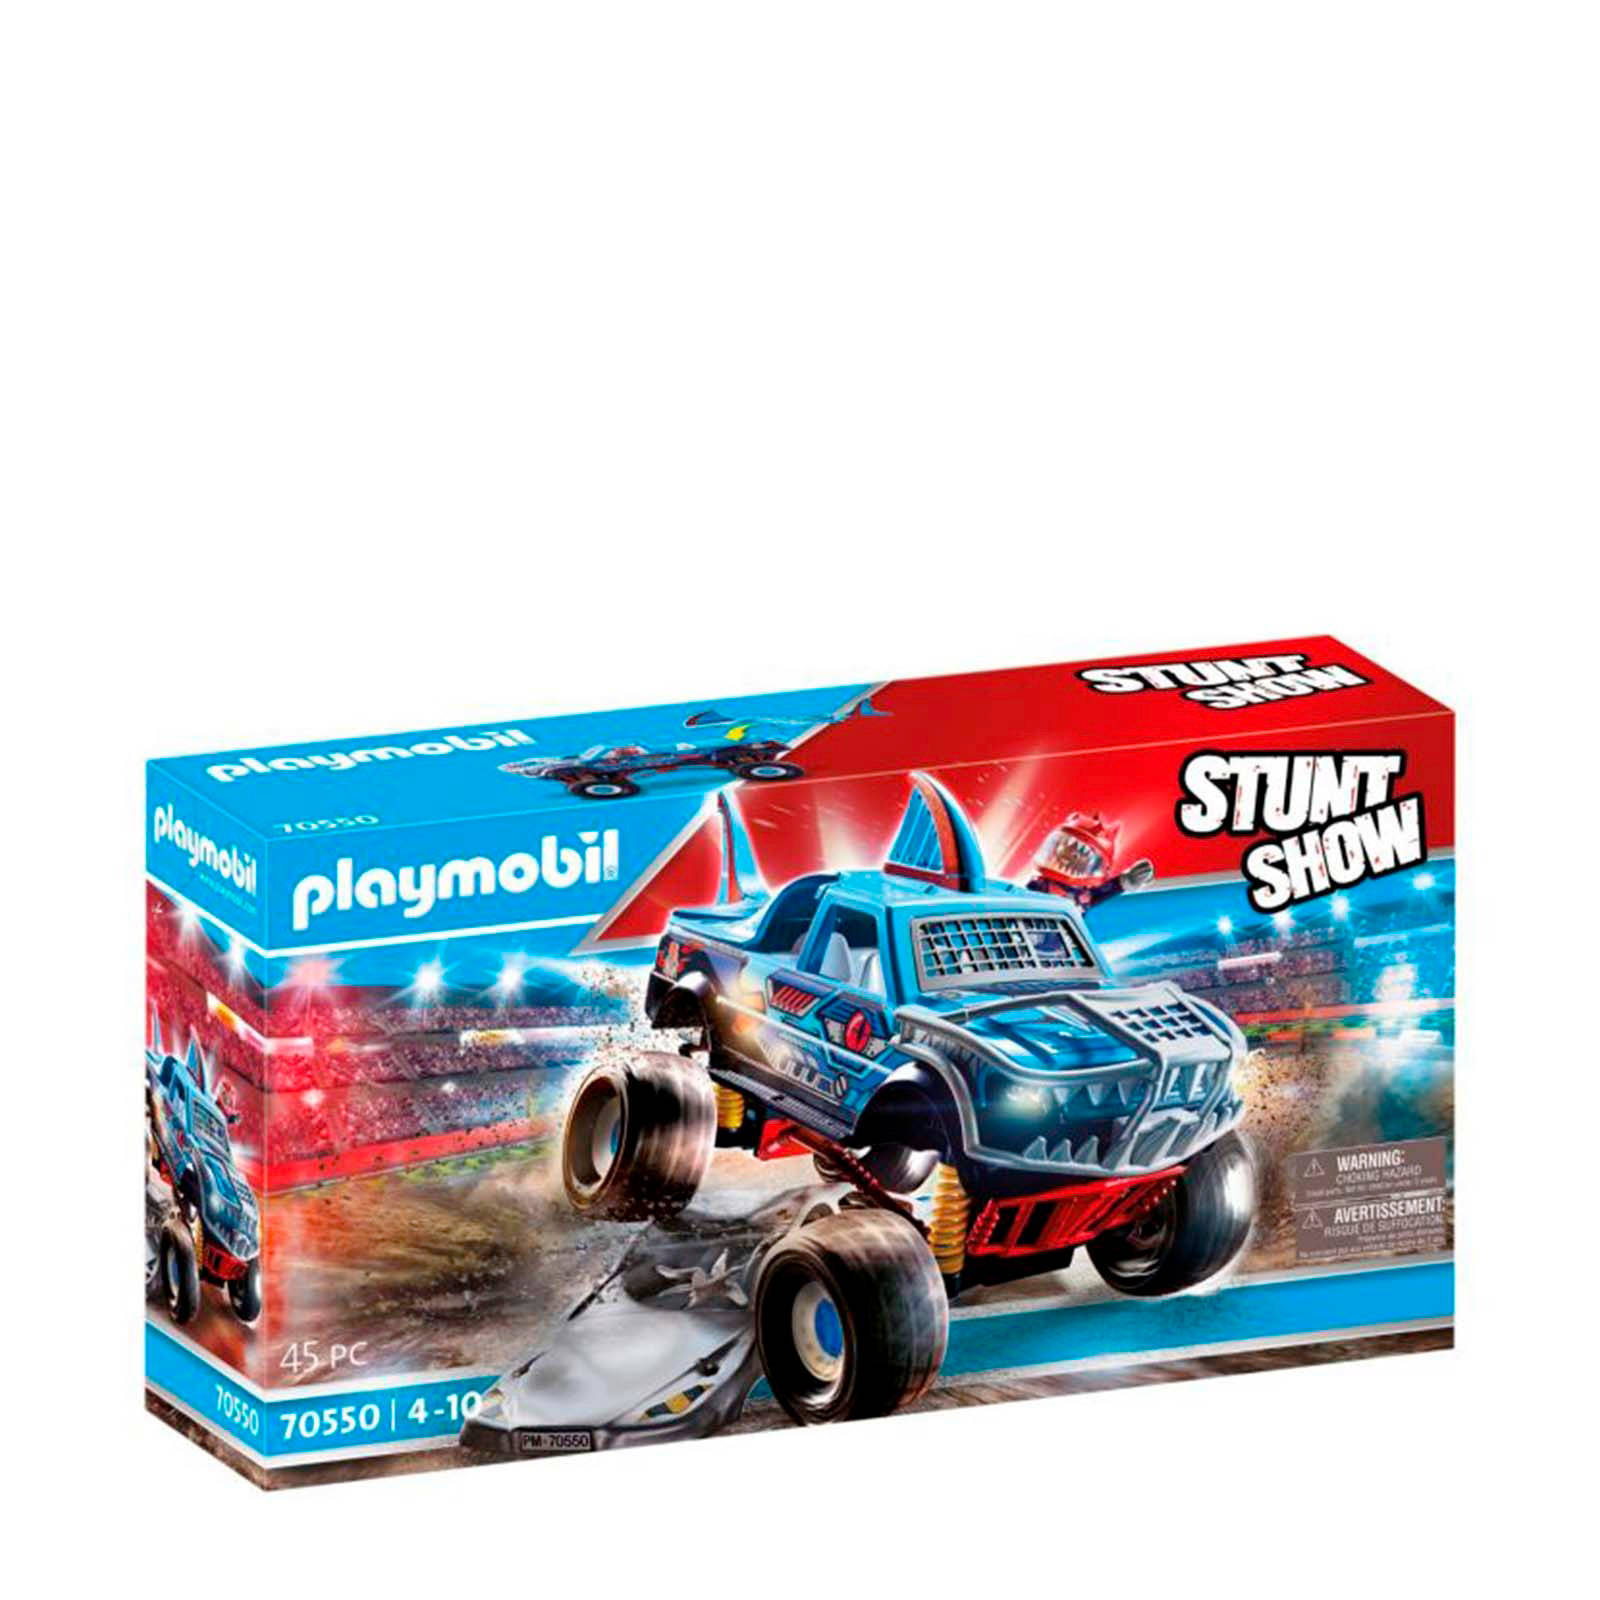 Playmobil ® Constructie speelset Monster Truck haai(70550 ), Stuntshow(45 stuks ) online kopen